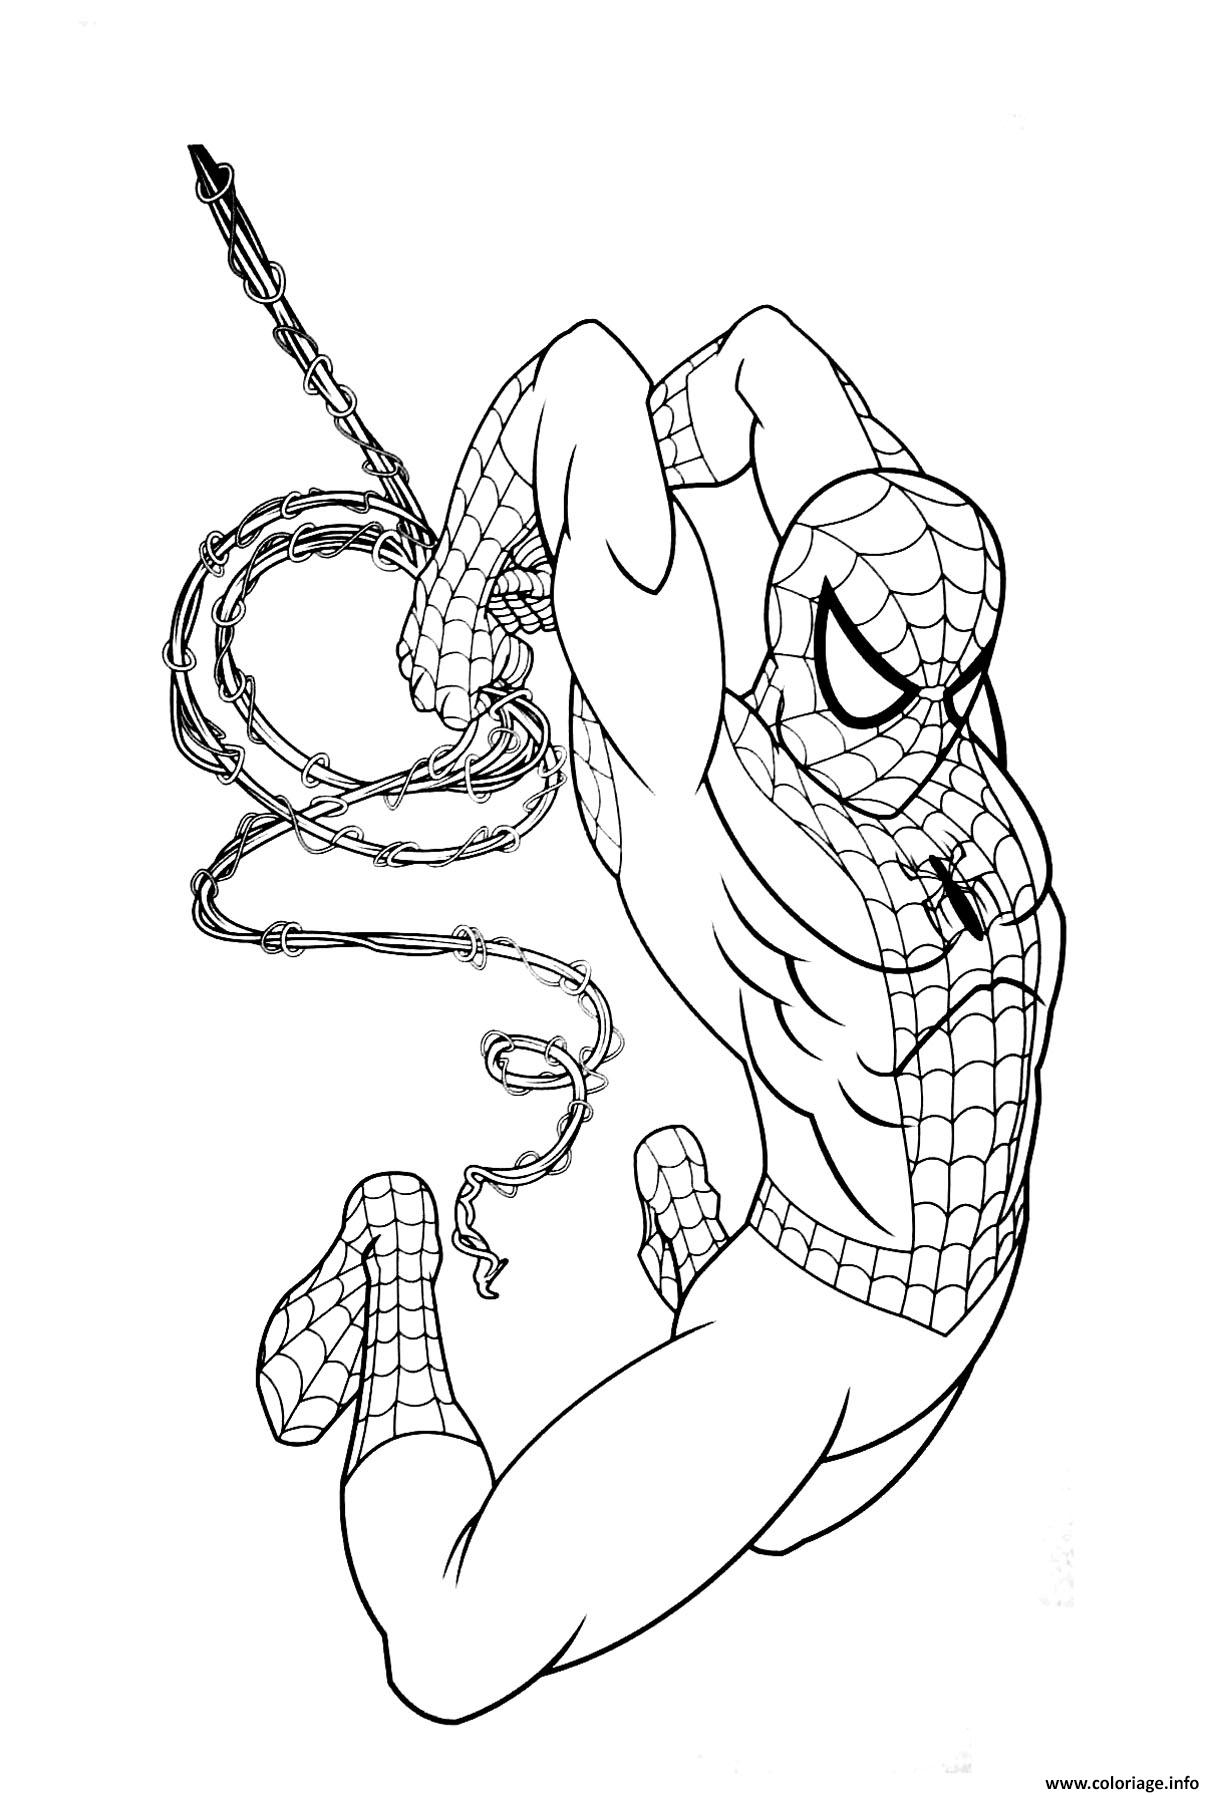 Coloriage Garcon Super Heros Marvel Spiderman Dessin Super Heros À Imprimer concernant Dessin À Imprimer Spiderman